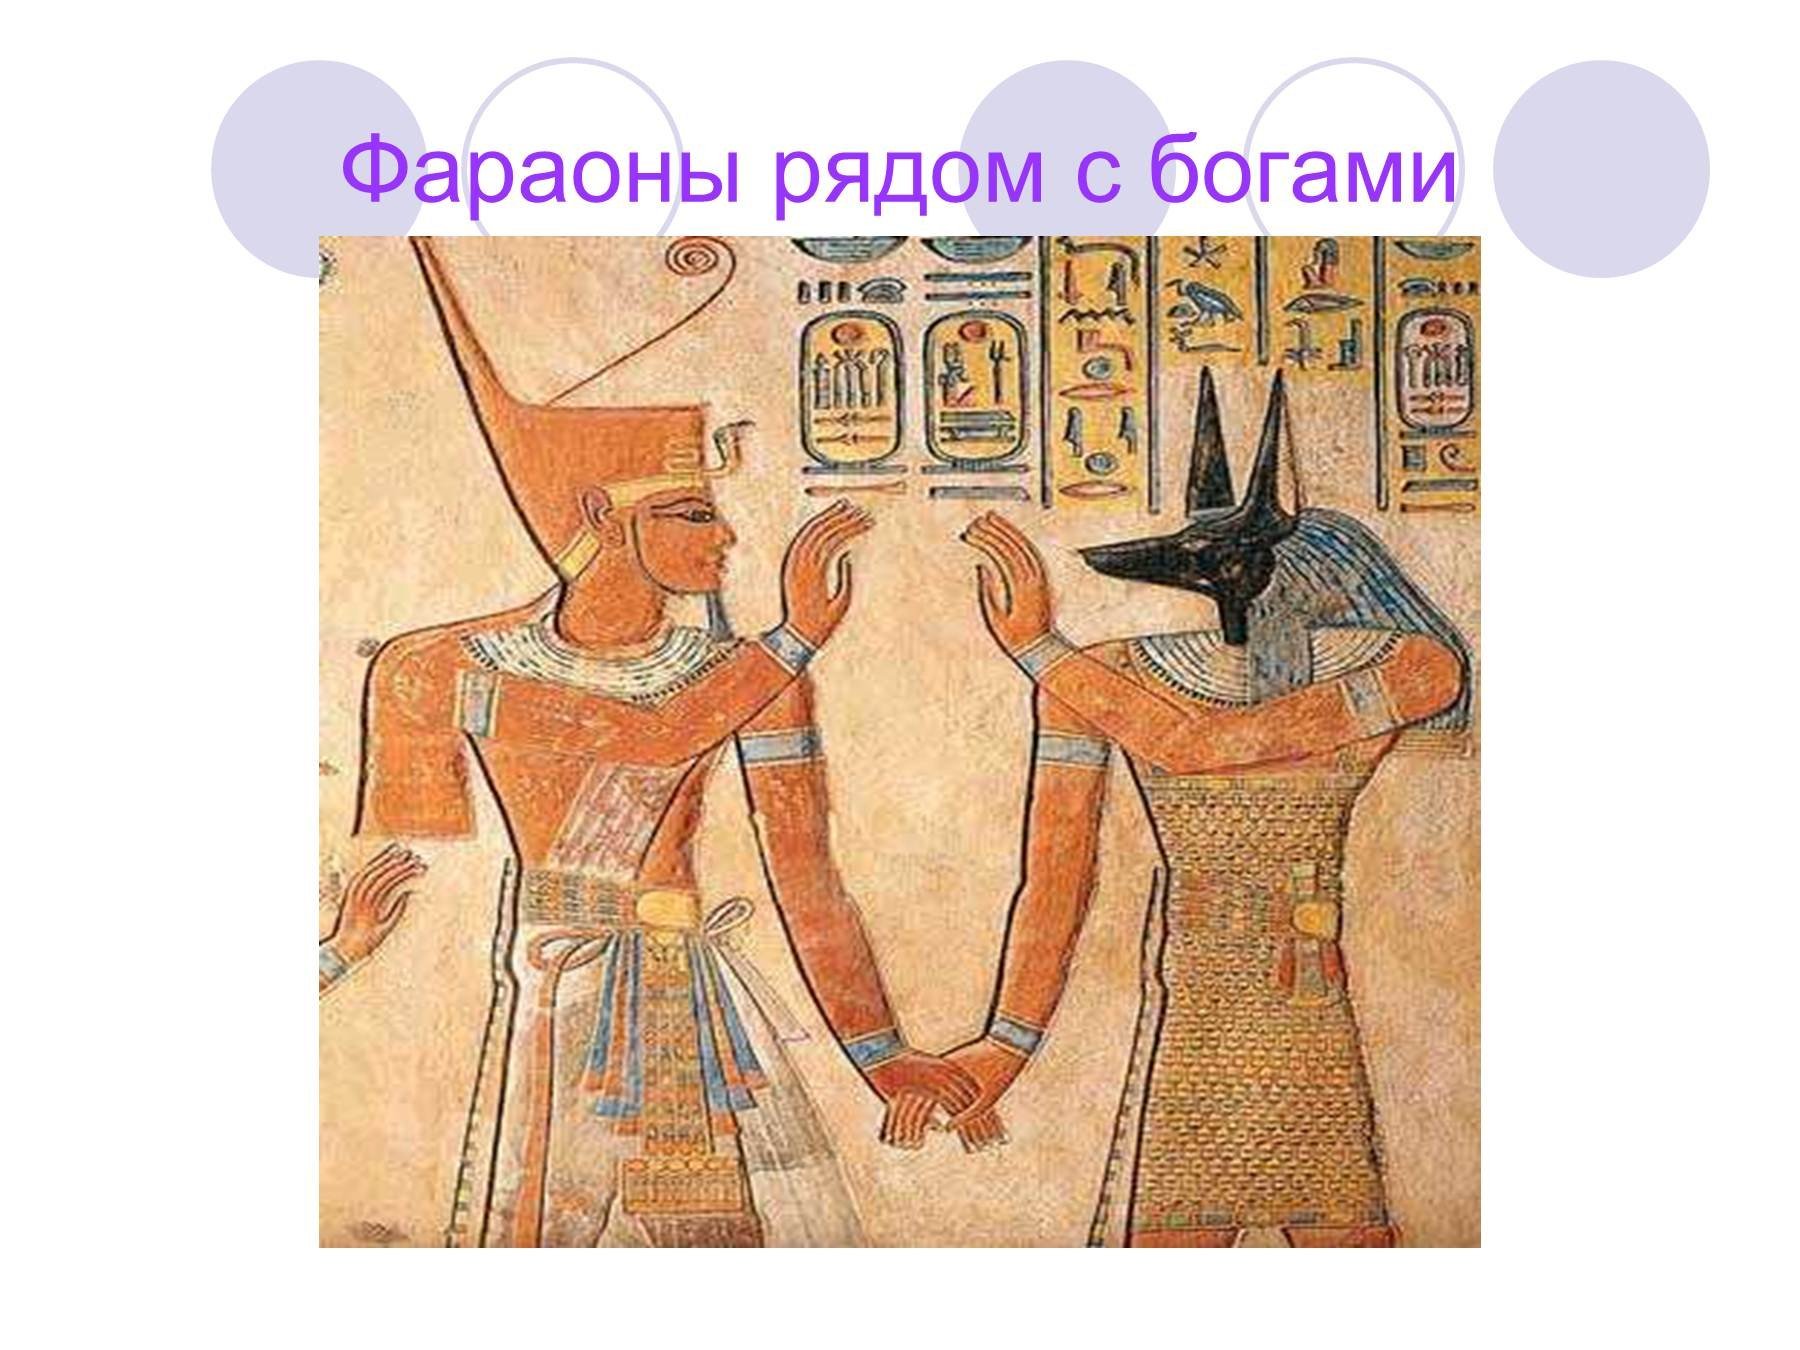 Изображения относящиеся к истории древнего египта. Царство мертвых Египет.